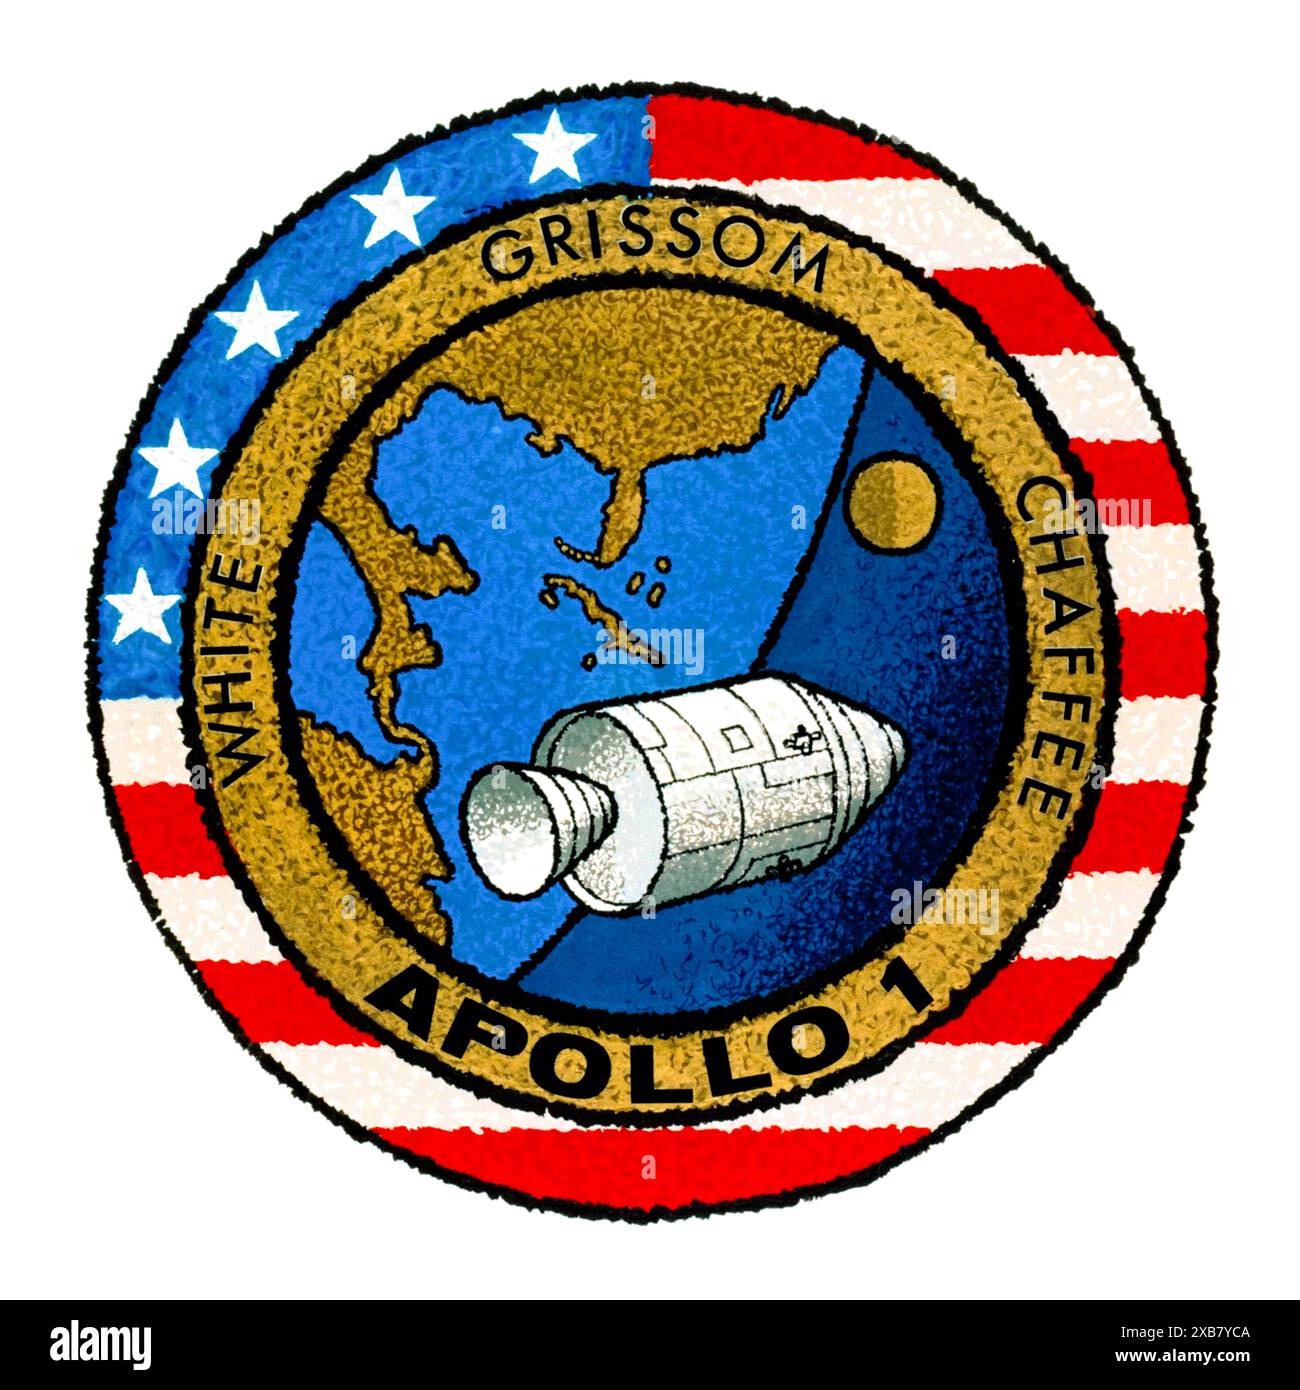 Apollo 1 primo logo della missione 1967 con equipaggio che mostra il modulo di comando e servizio Apollo in orbita terrestre bassa con la luna in lontananza e i nomi dell'equipaggio Gus Grissom, ed White, e Roger B. Chaffee, che tradigamente morì in un incendio durante un test di lancio il 27 gennaio 1967. L'insegna è stata disegnata dall'equipaggio, con le opere d'arte realizzate dal dipendente della North American Aviation Allen Stevens. Foto Stock